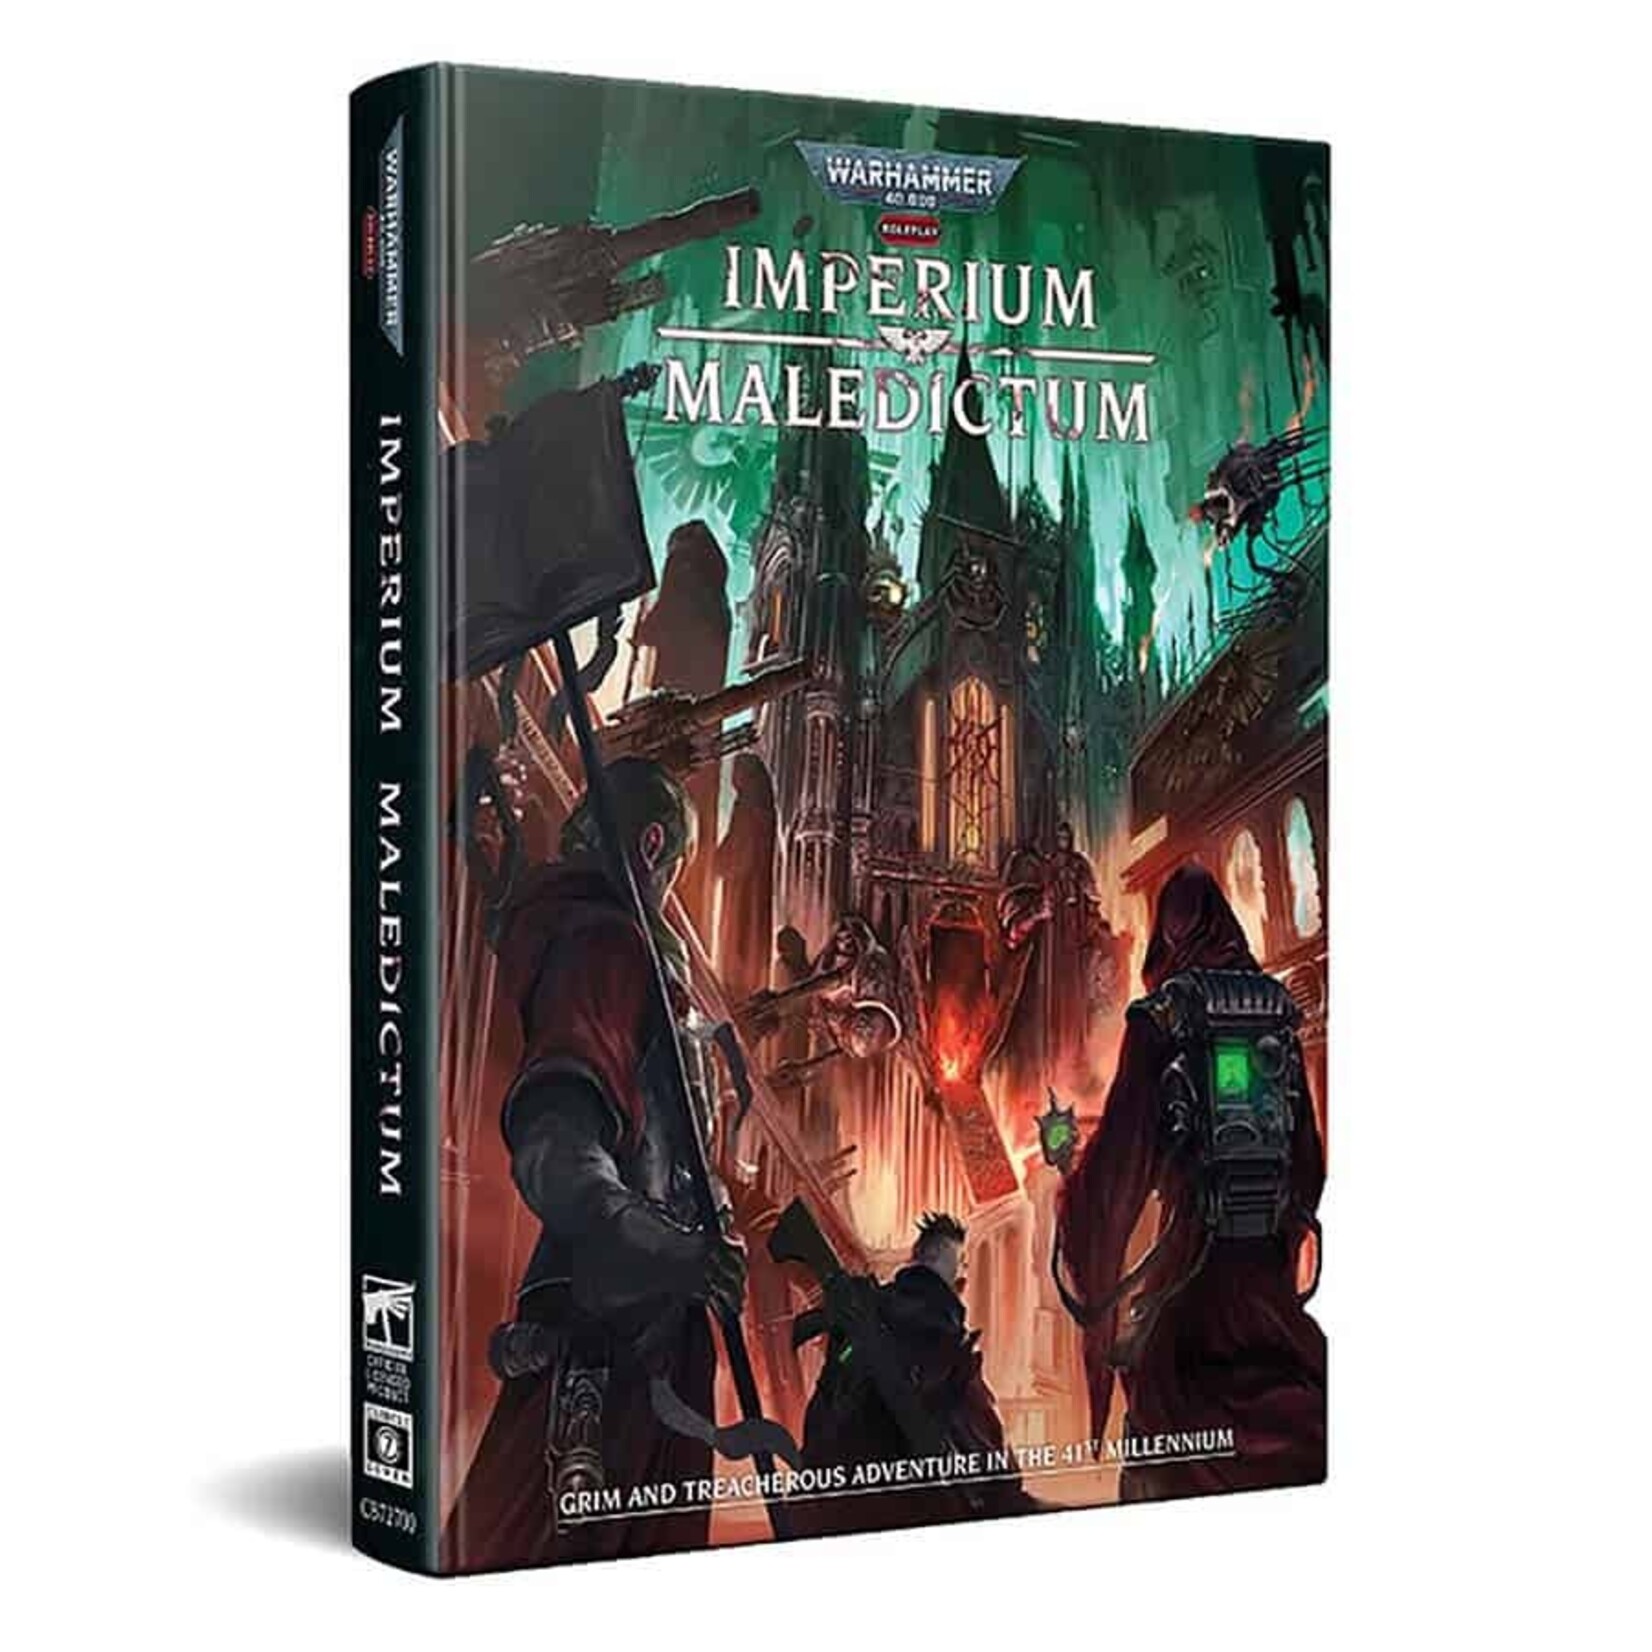 Warhammer 40k RPG: Imperium Maledictum Core Rulebook